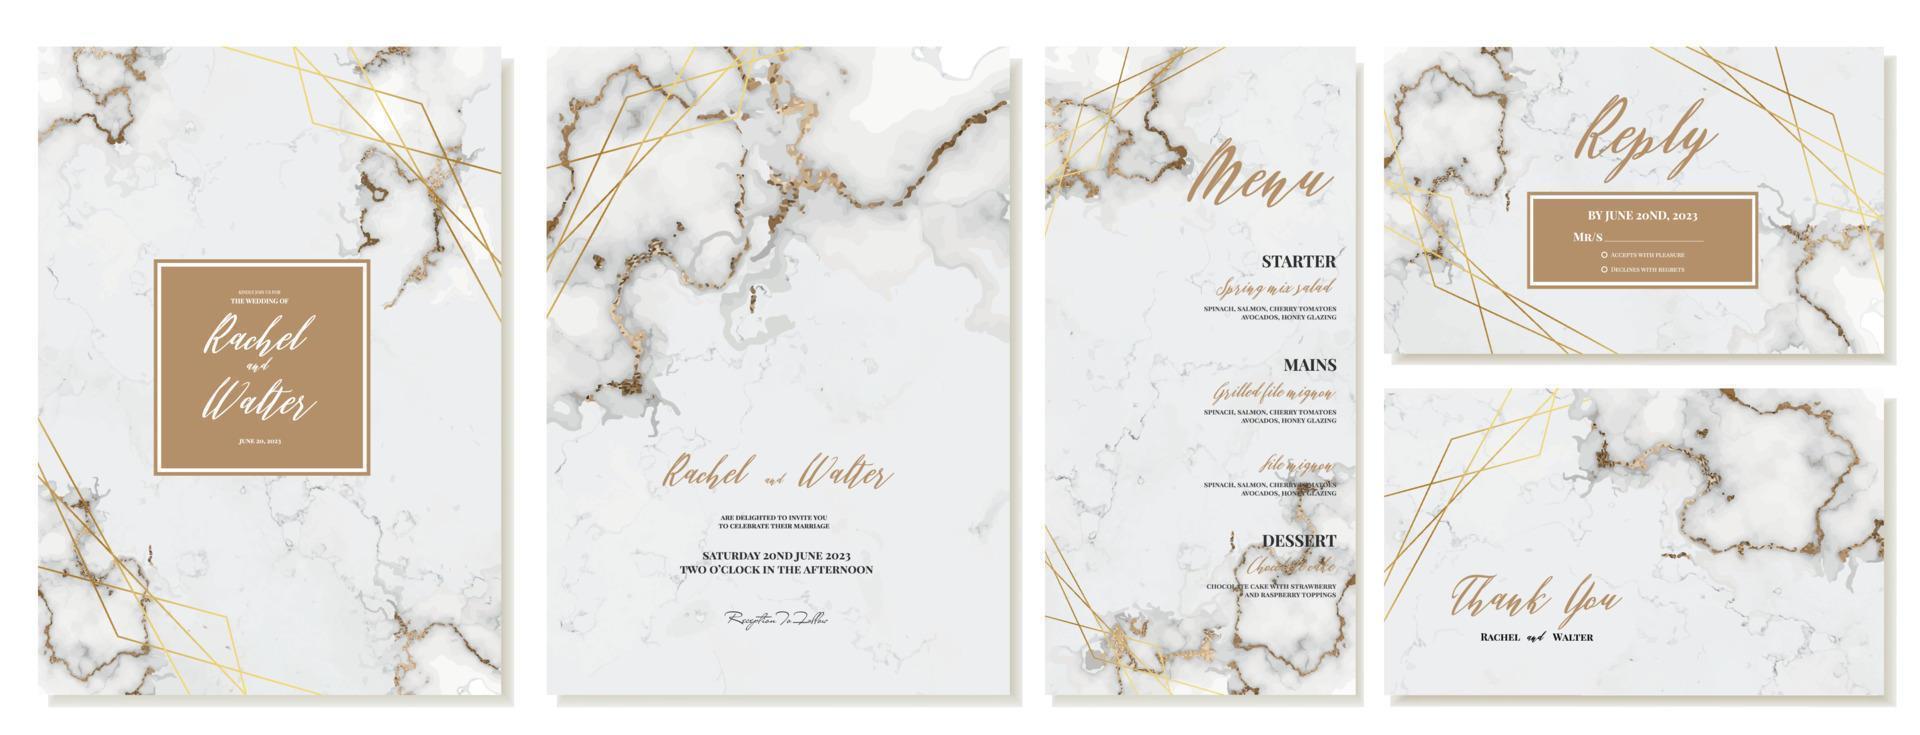 ensemble de mariage invitations sur marbre Contexte. vecteur modèle pour mariage, RSVP et menu